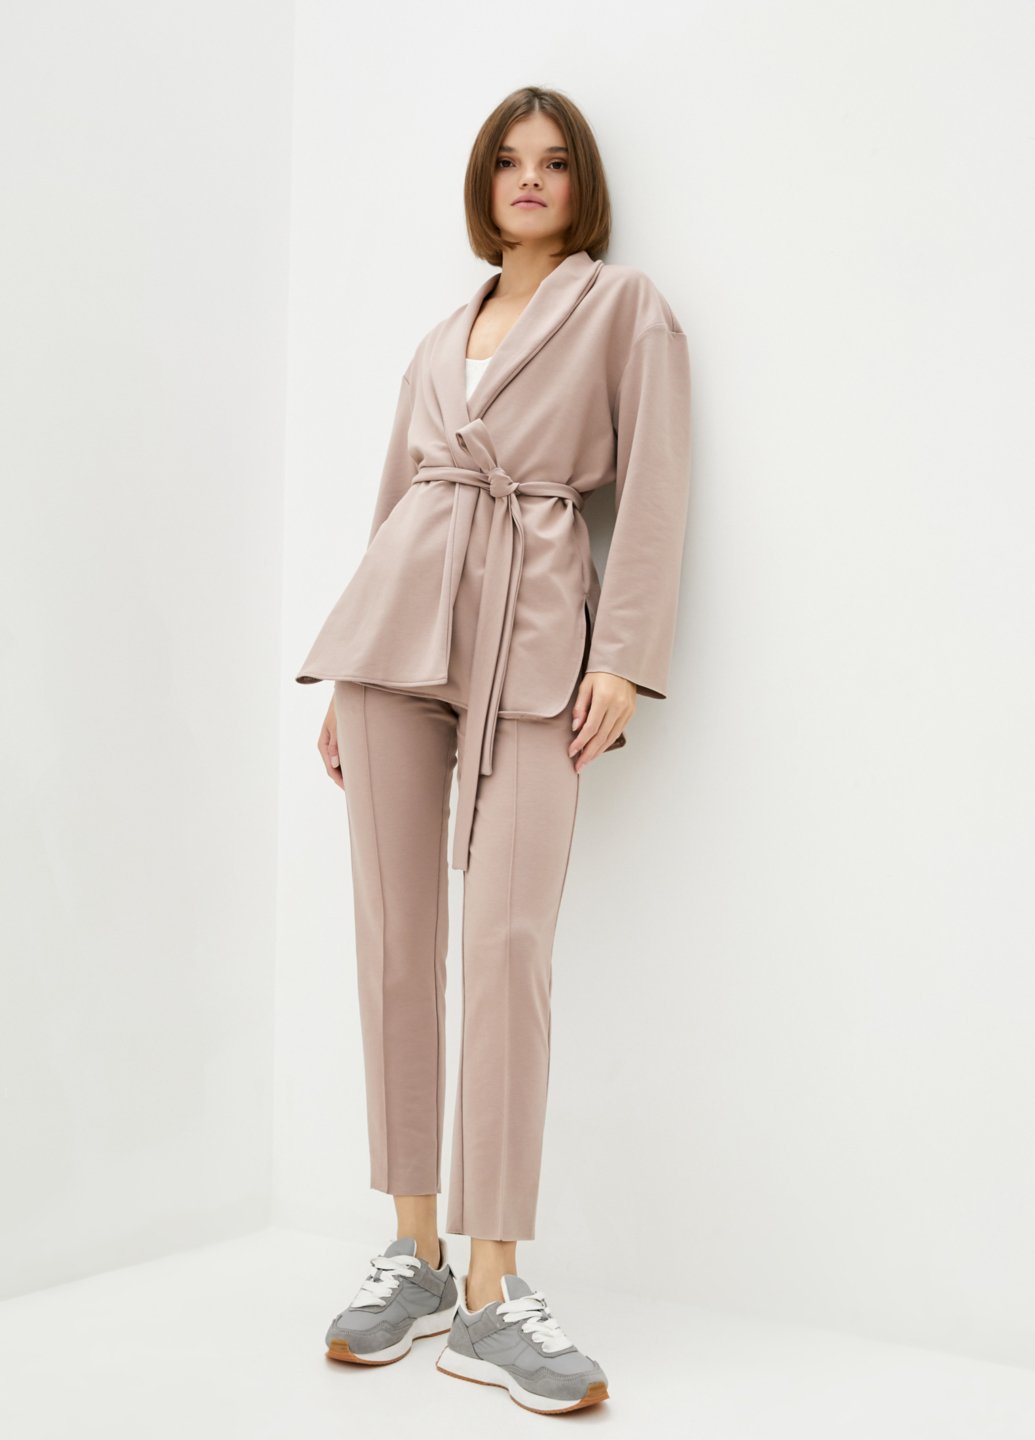 Купить Классический костюм женский пудрового цвета Merlini Йоркшир 100000053, размер 42-44 в интернет-магазине